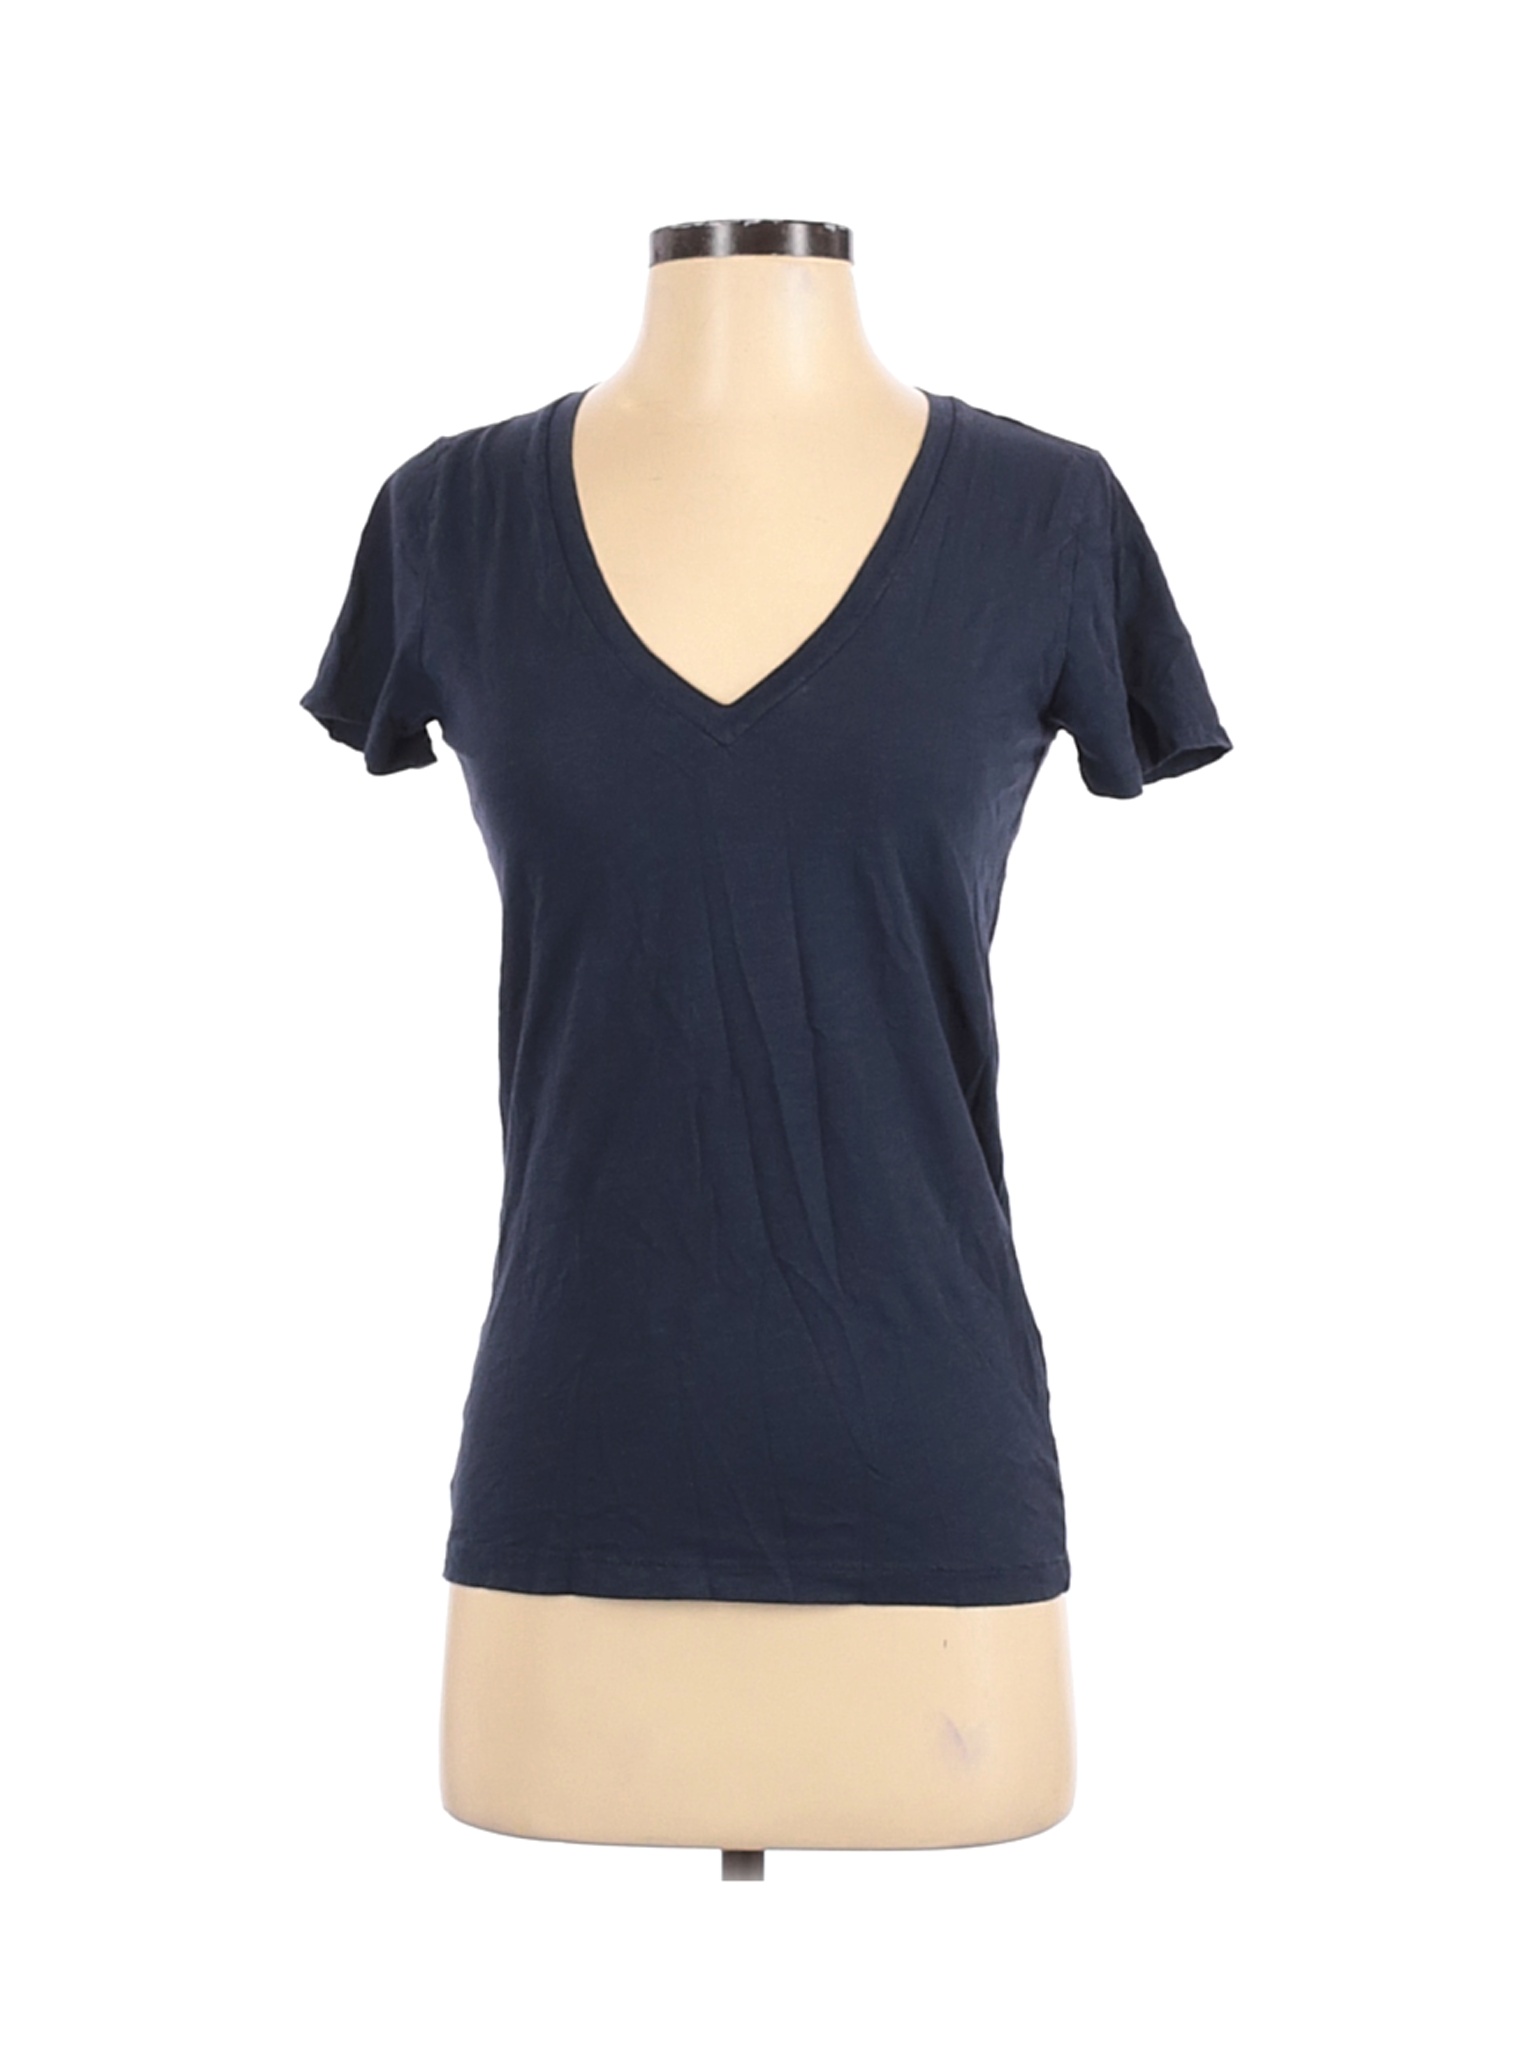 J.Crew Factory Store Women Blue Short Sleeve T-Shirt S | eBay